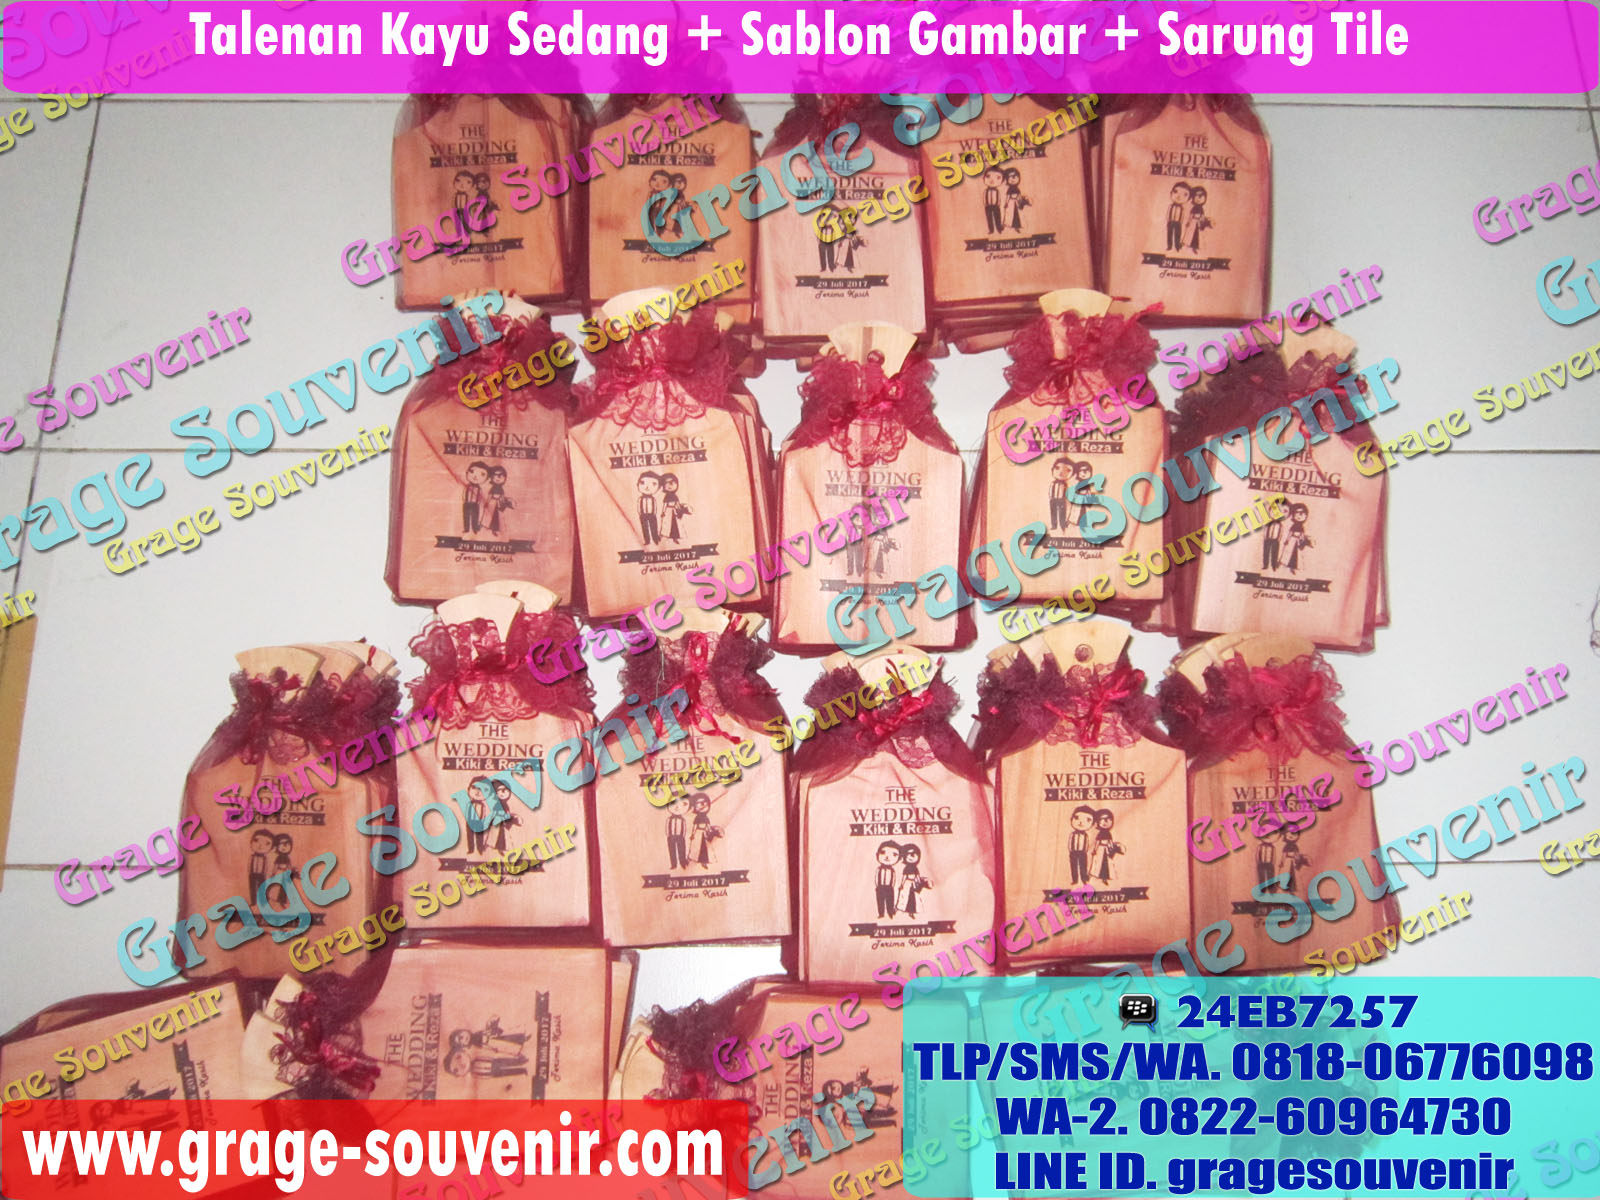  Toko  Jual Souvenir  Pernikahan di Palembang  dimana Murah Jual Souvenir  